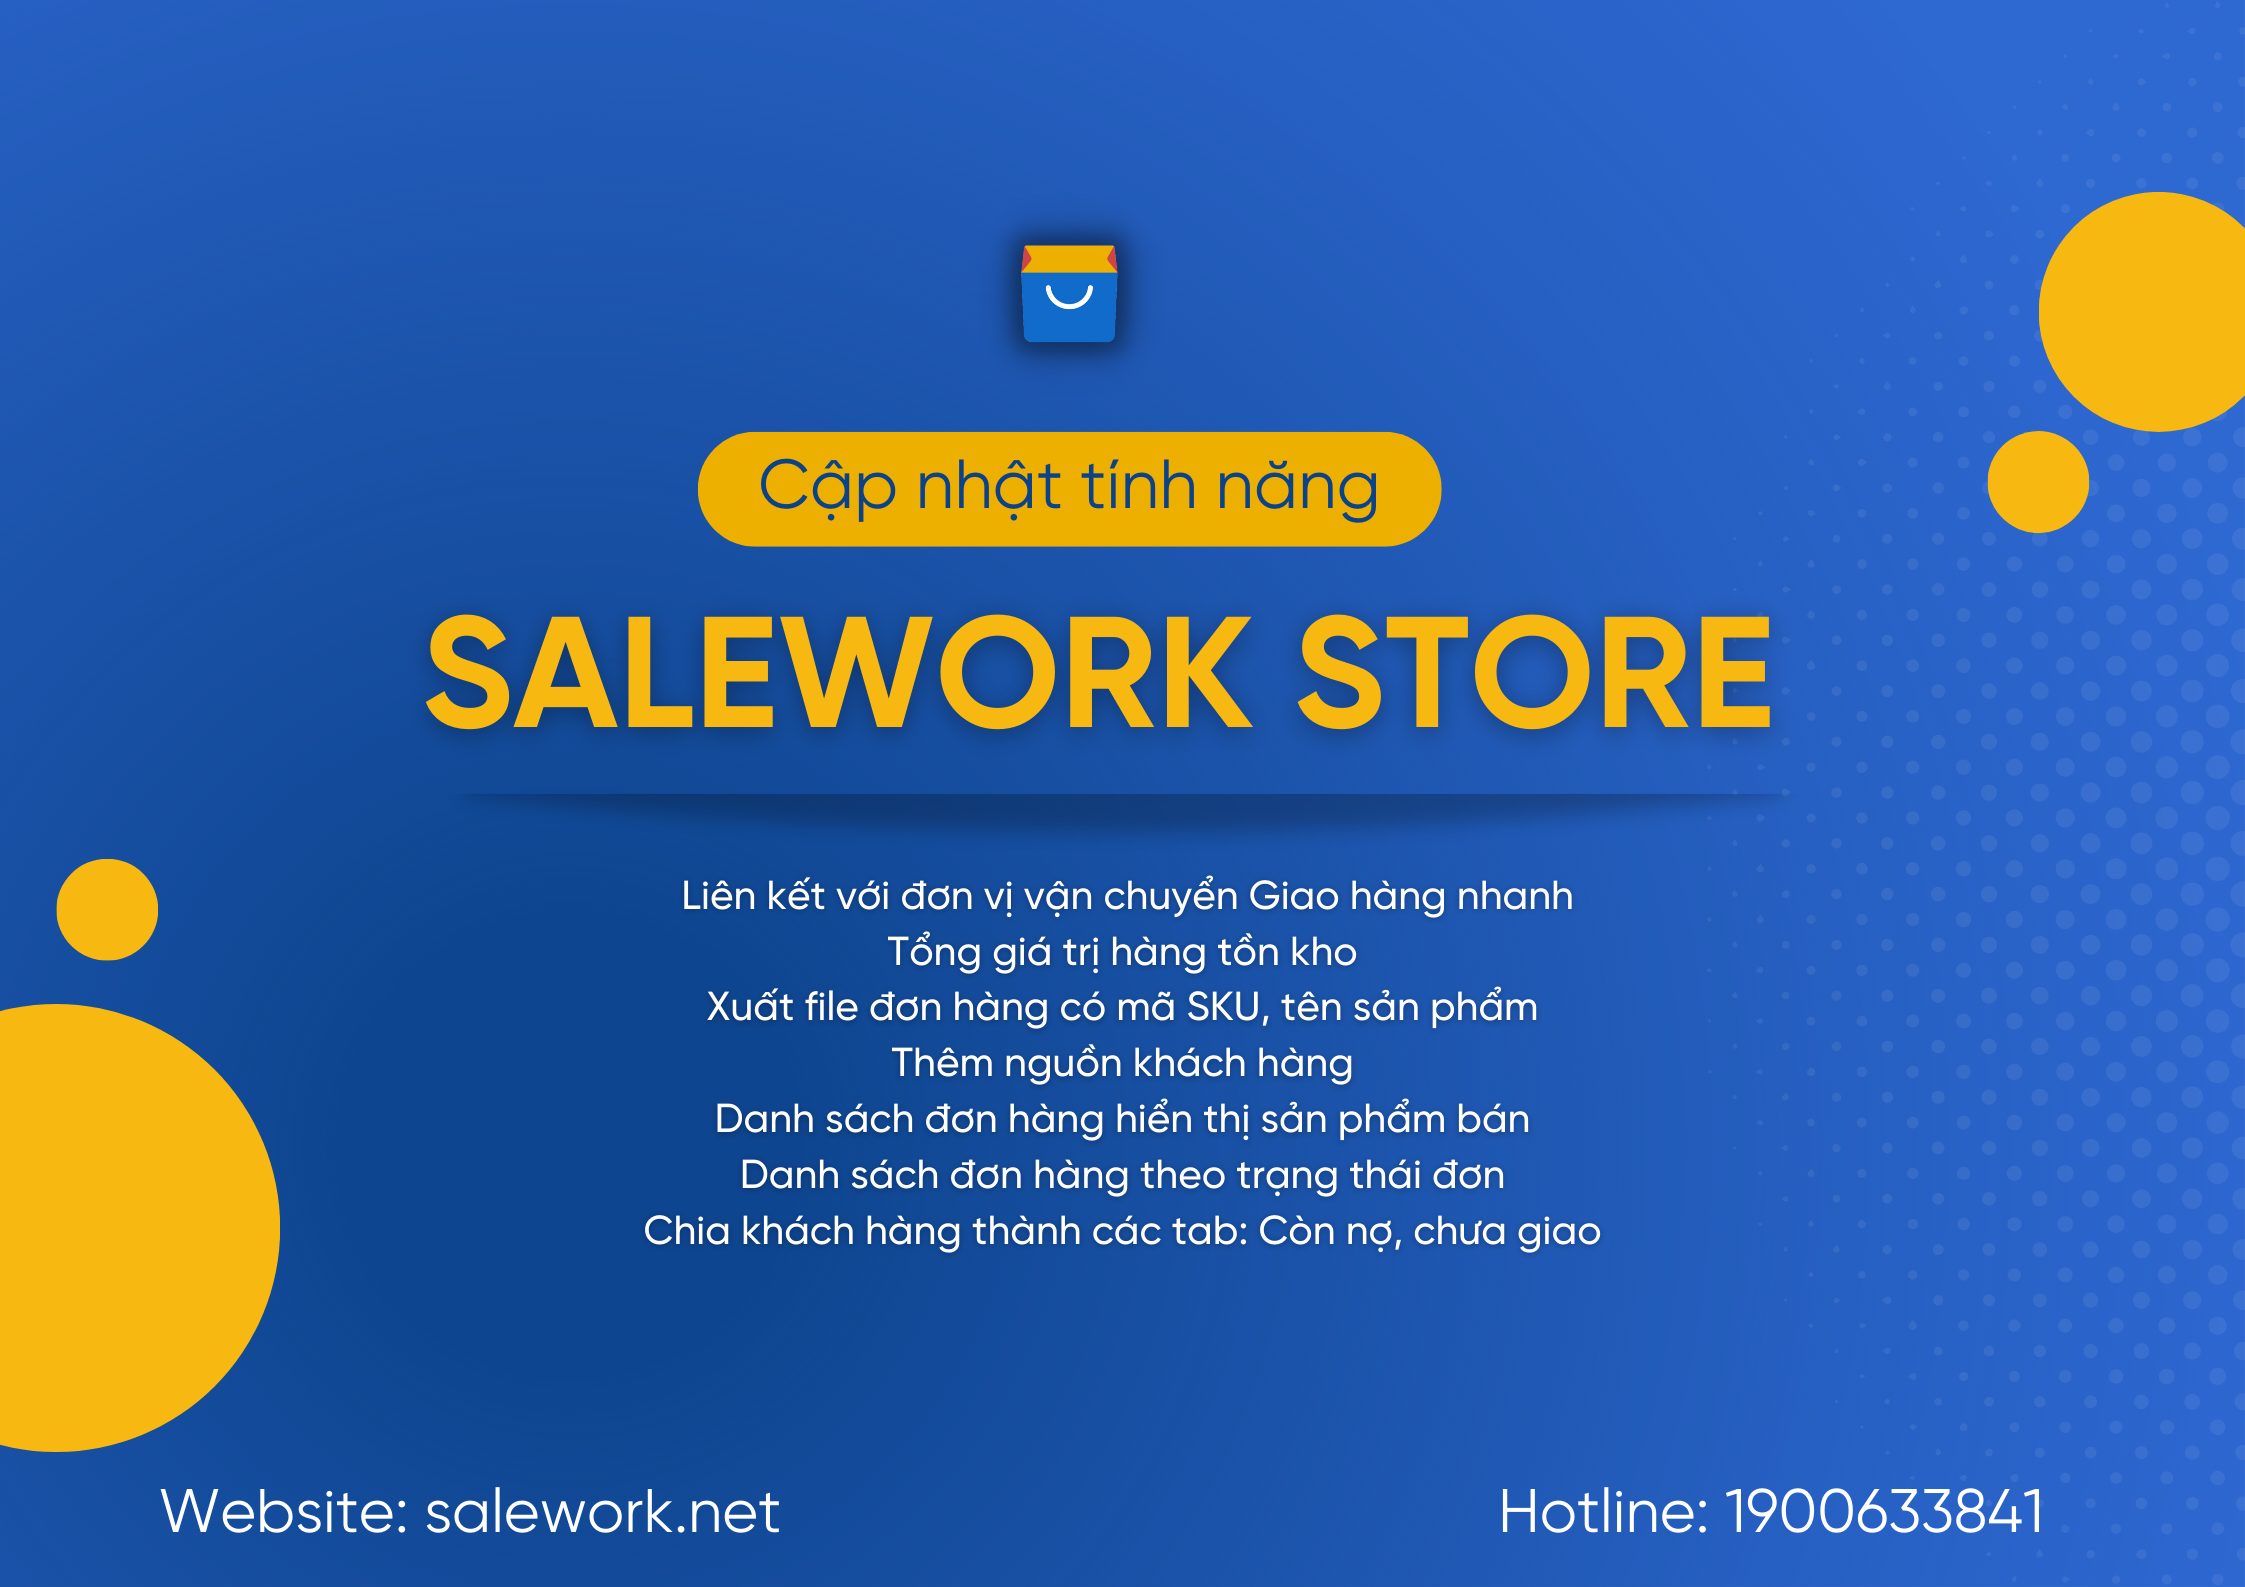 [ Thông báo] Salework Store cập nhật phần mềm - 22